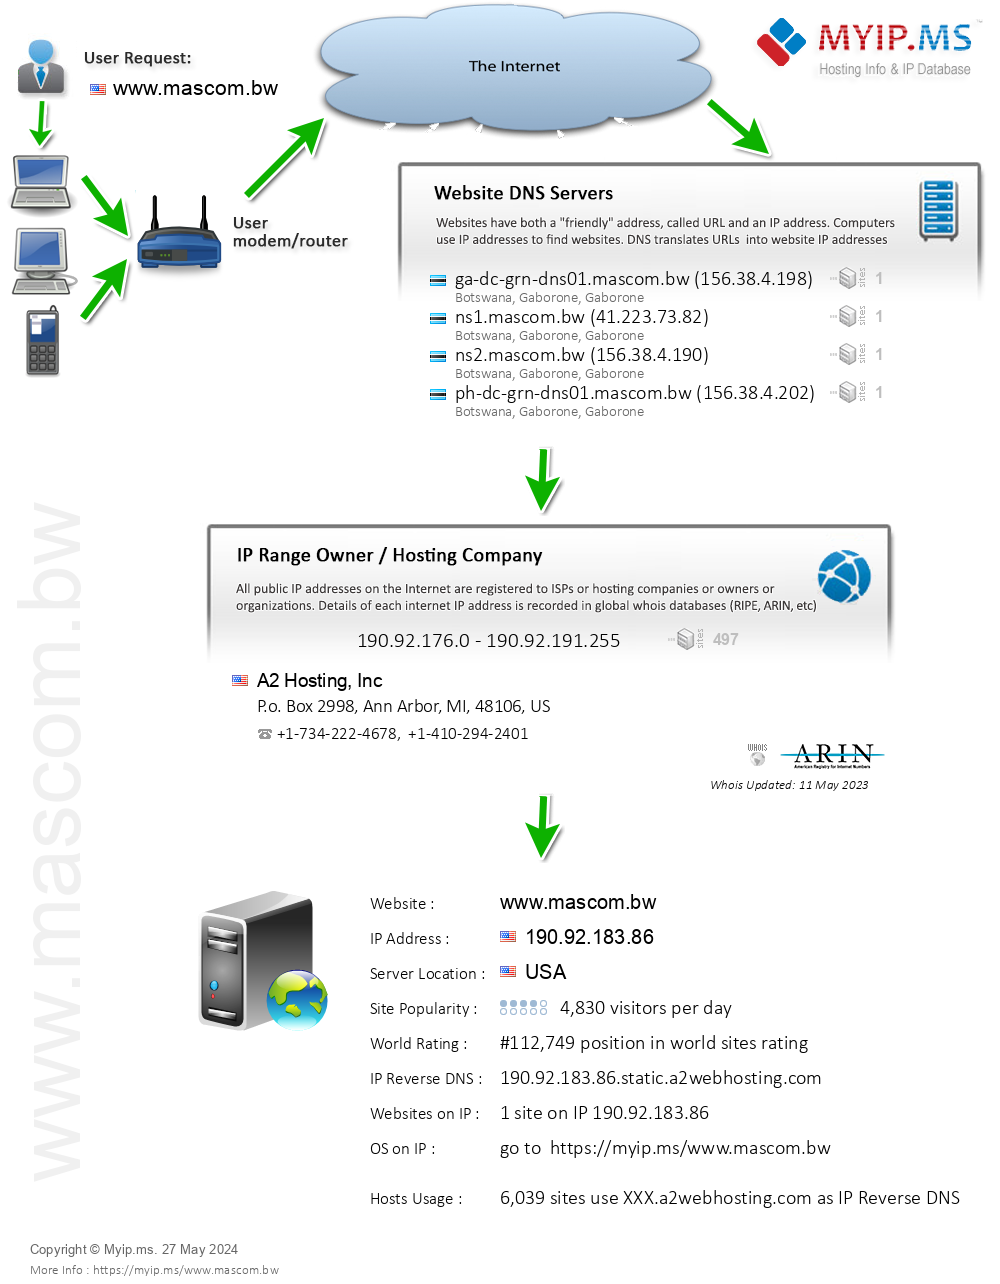 Mascom.bw - Website Hosting Visual IP Diagram